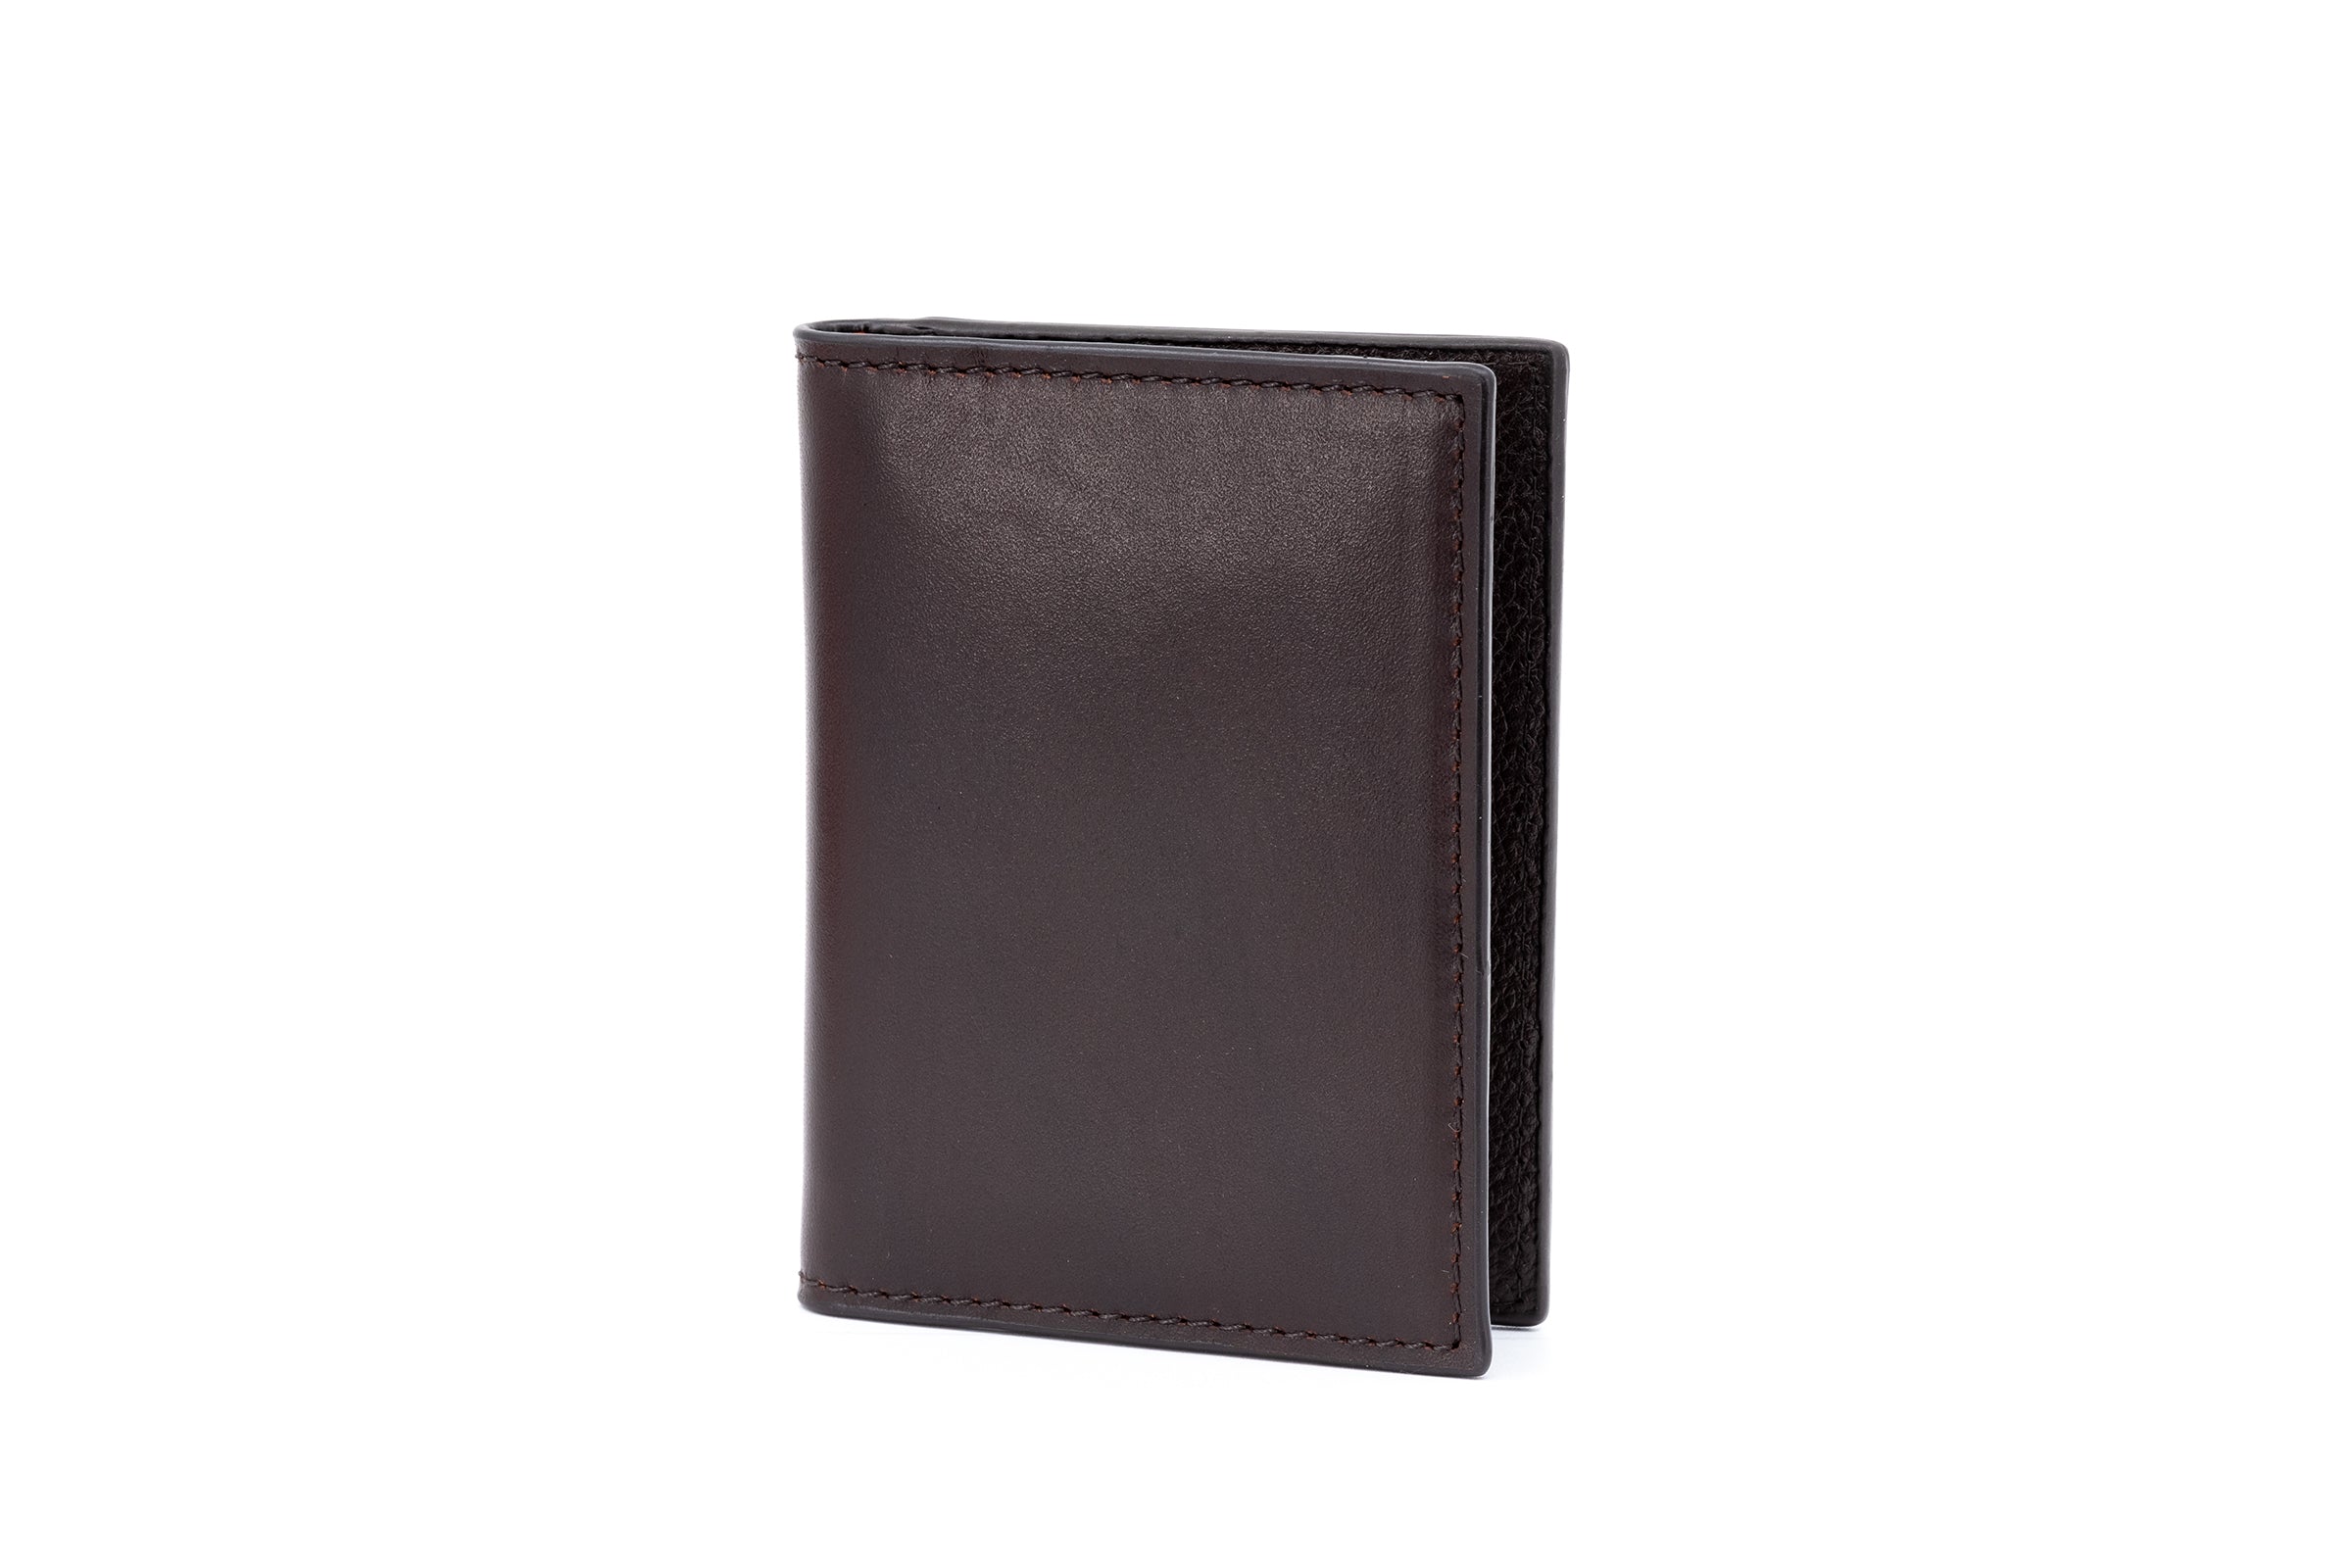 Edward Hand Glazed Saddle Leather ID Wallet - Chocolate